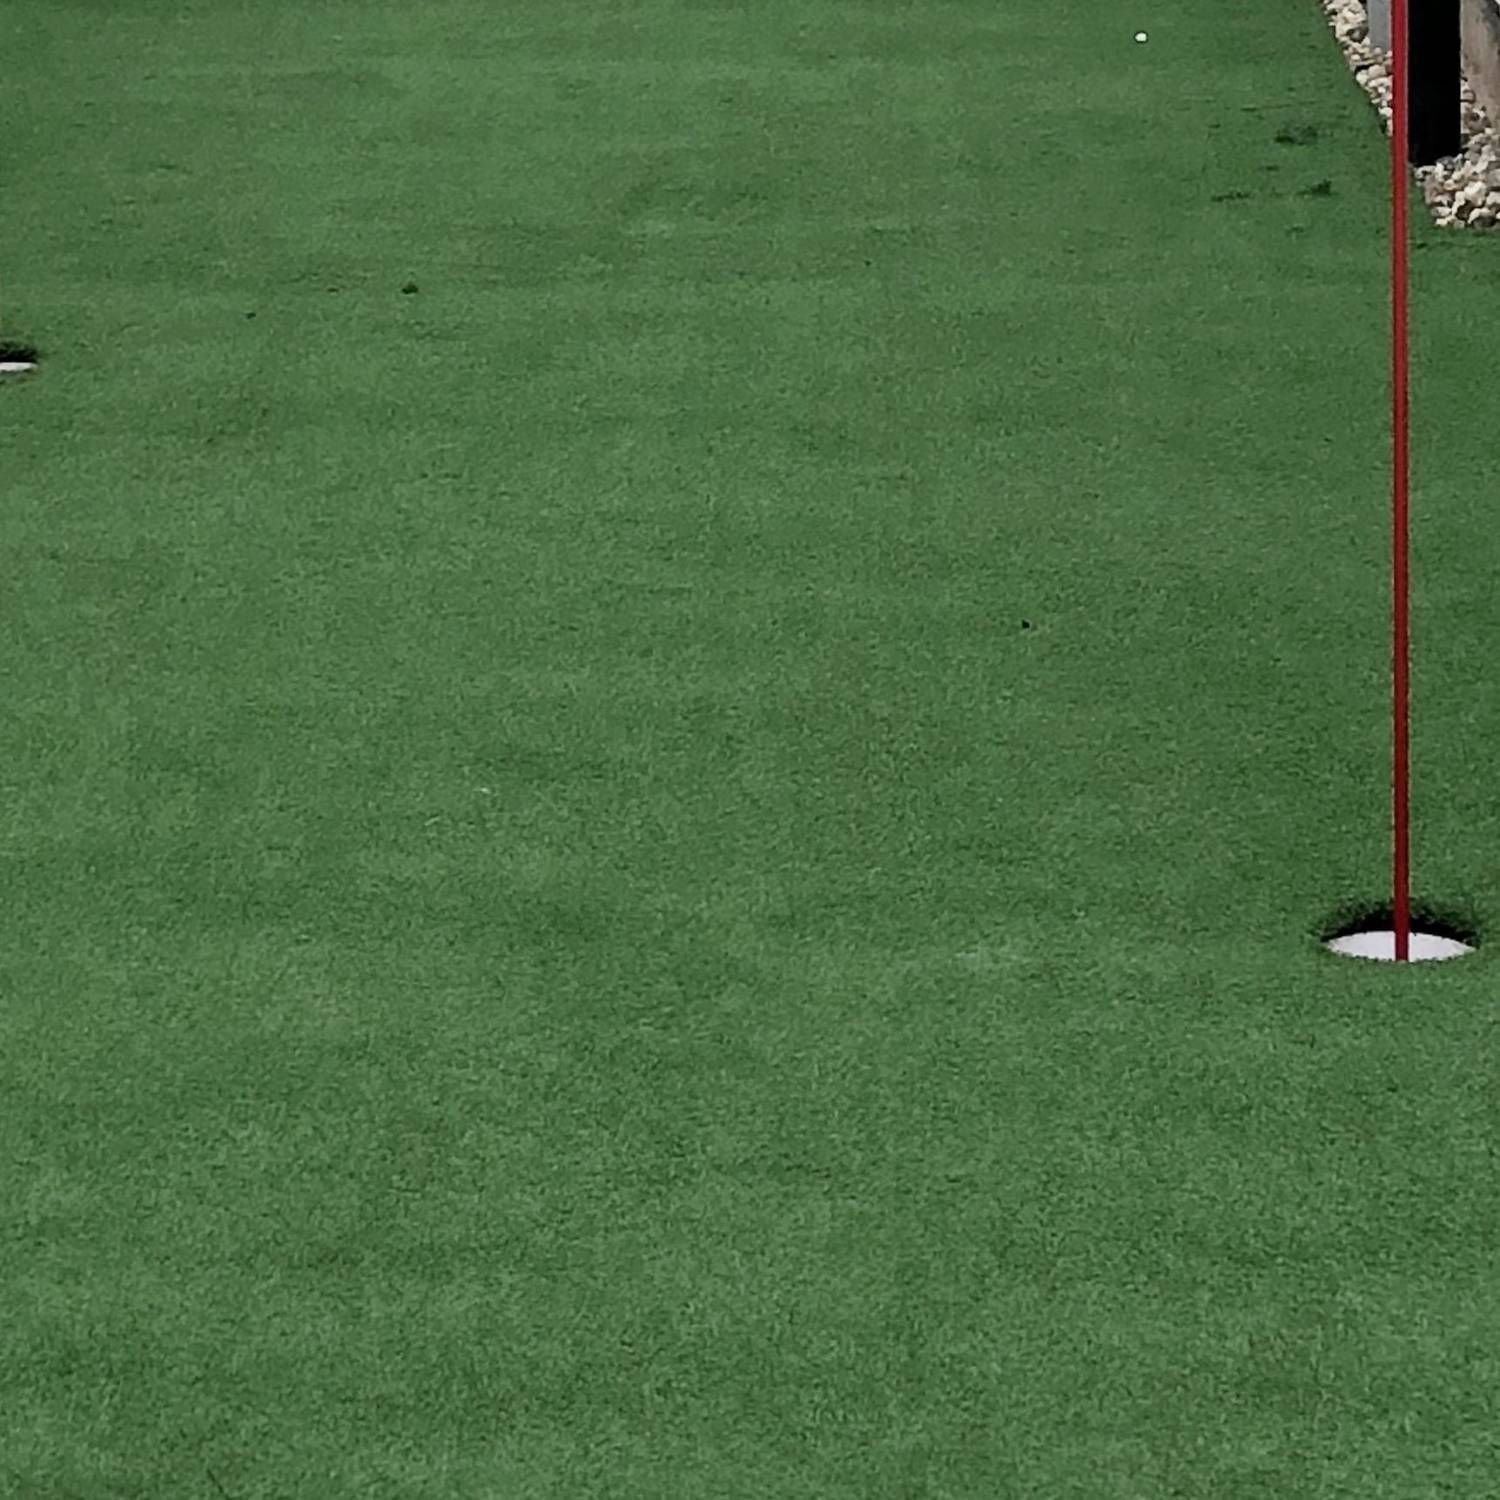 CastleGrass GolfPlus - Artificial Grass